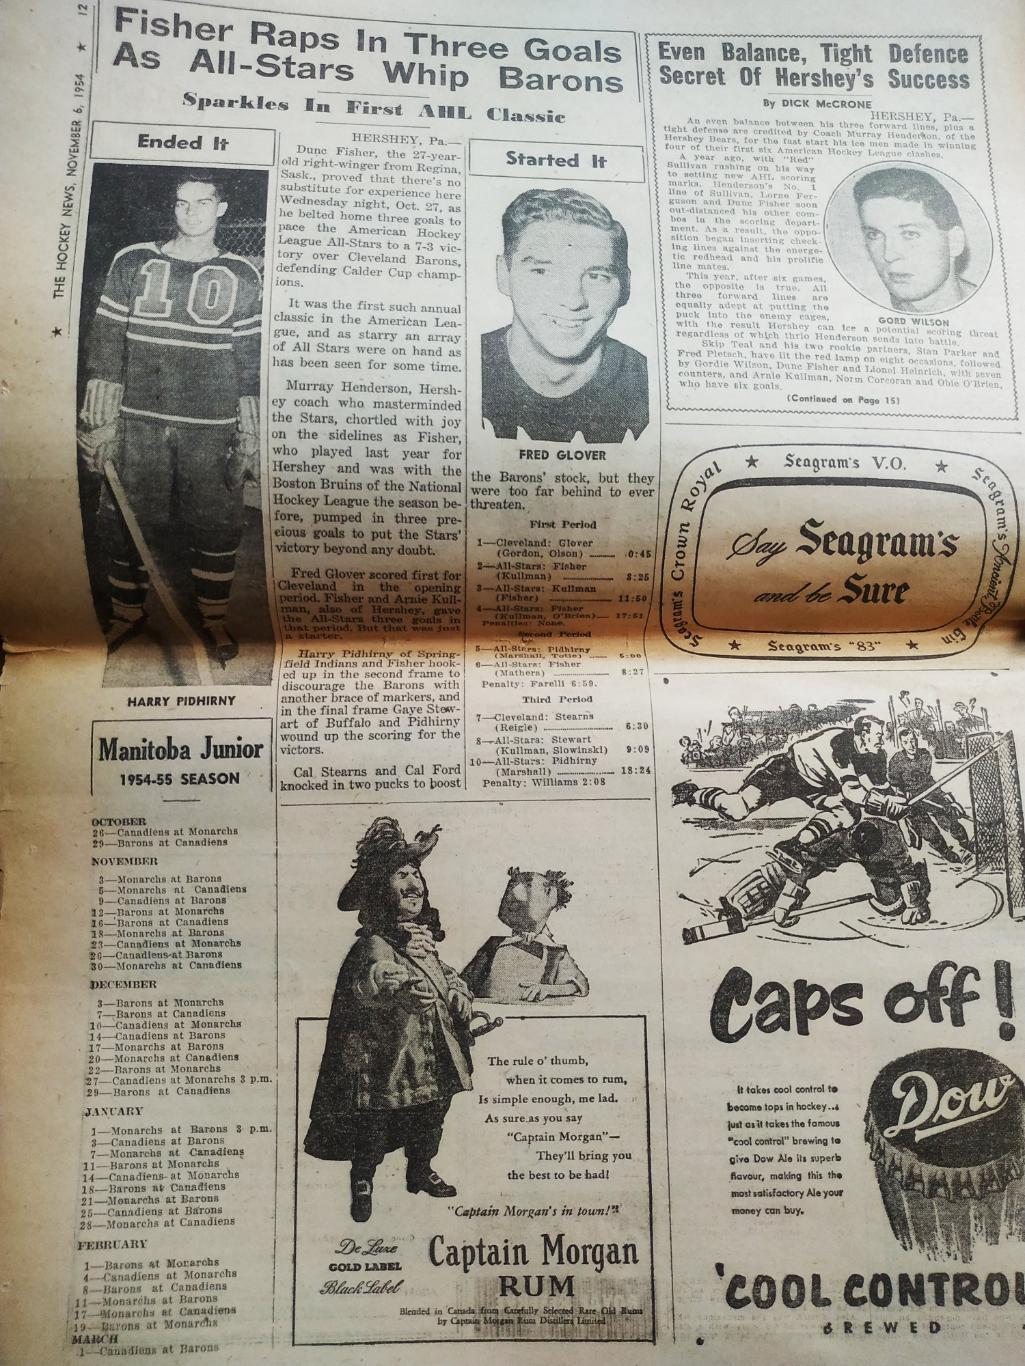 ХОККЕЙ ЖУРНАЛ ЕЖЕНЕДЕЛЬНИК НХЛ НОВОСТИ ХОККЕЯ NOV.6 1954 NHL THE HOCKEY NEWS 5